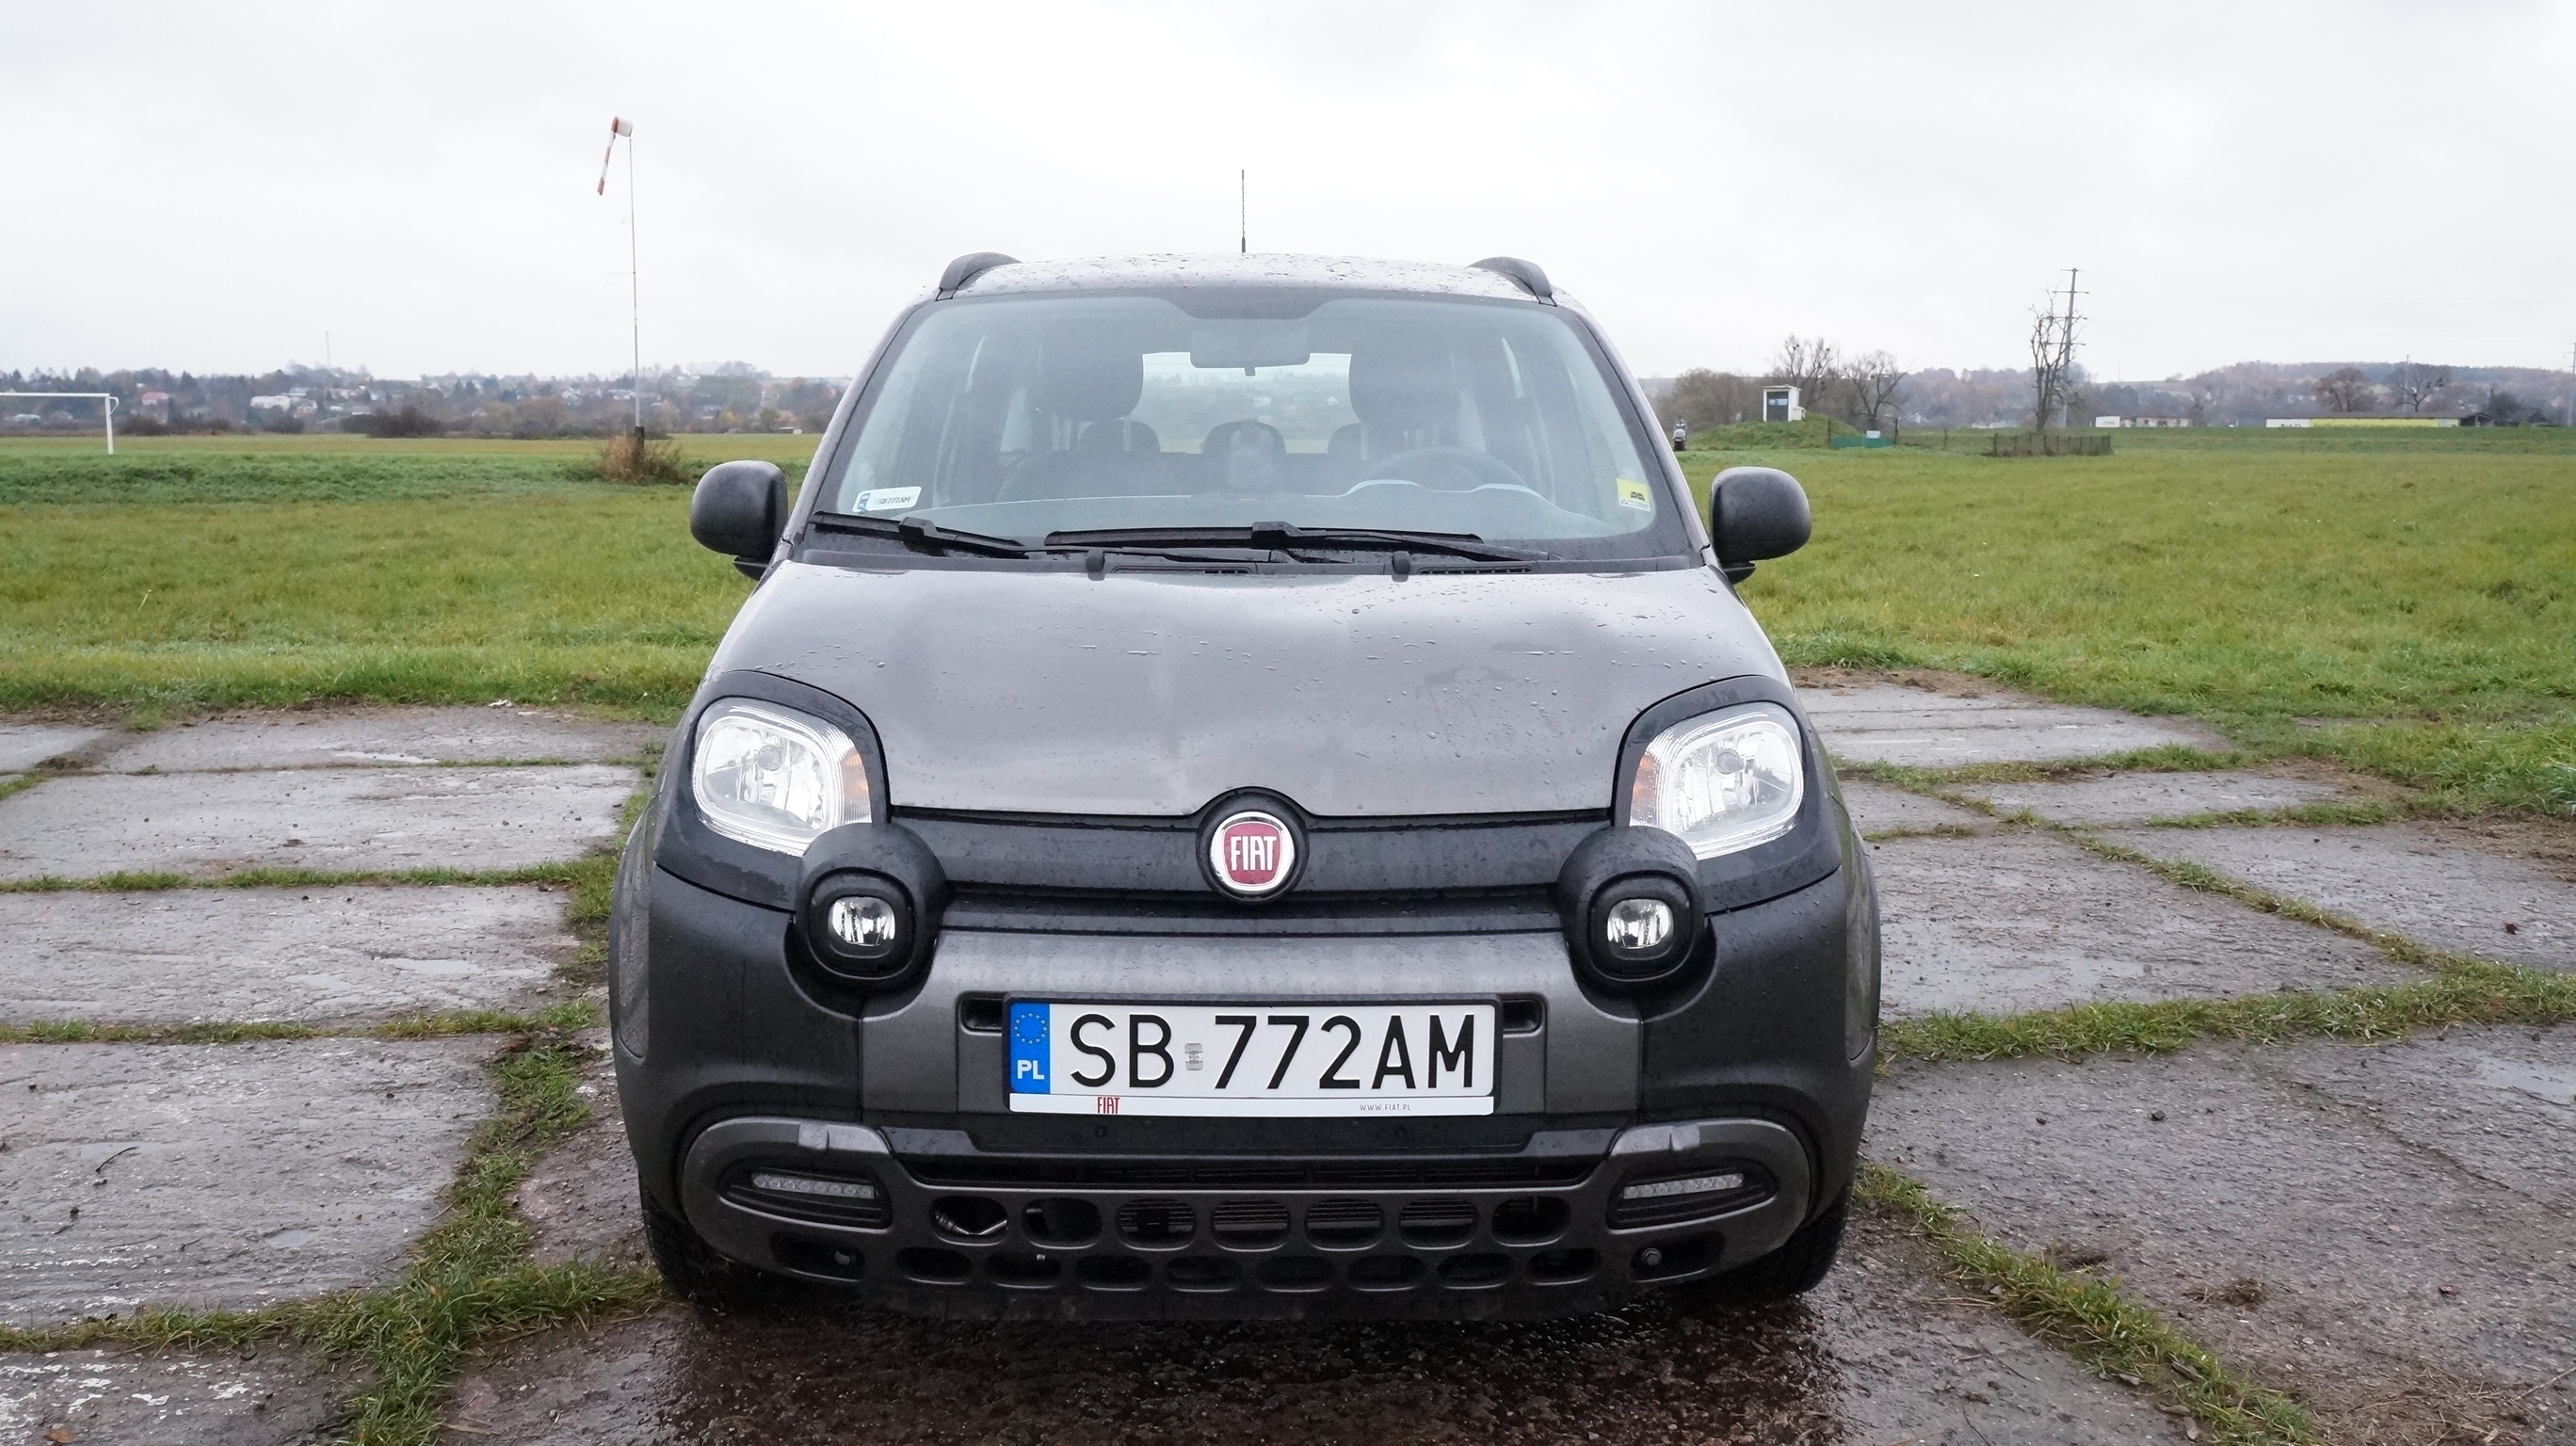 Fiat Panda City Cross Hybrid 1,0 70 Km 6 Mt: Nie Tylko Wygląd | Business Journal Polska